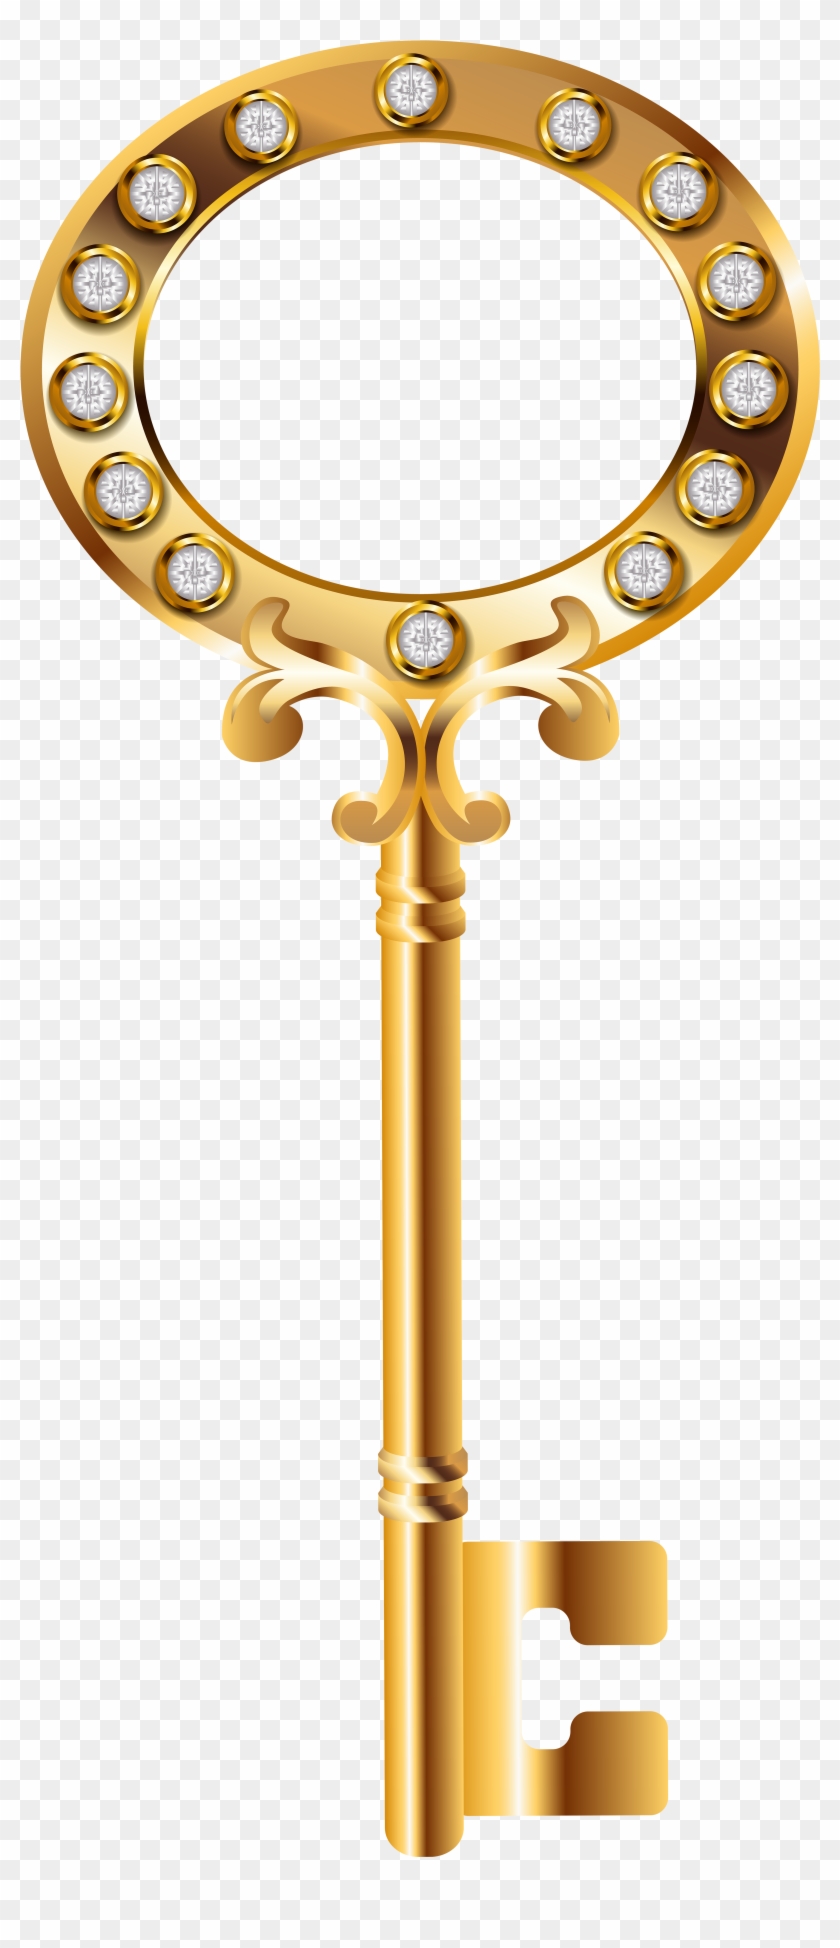 Golden Key Png Clip Art Image - Transparent Gold Key Png #2216490